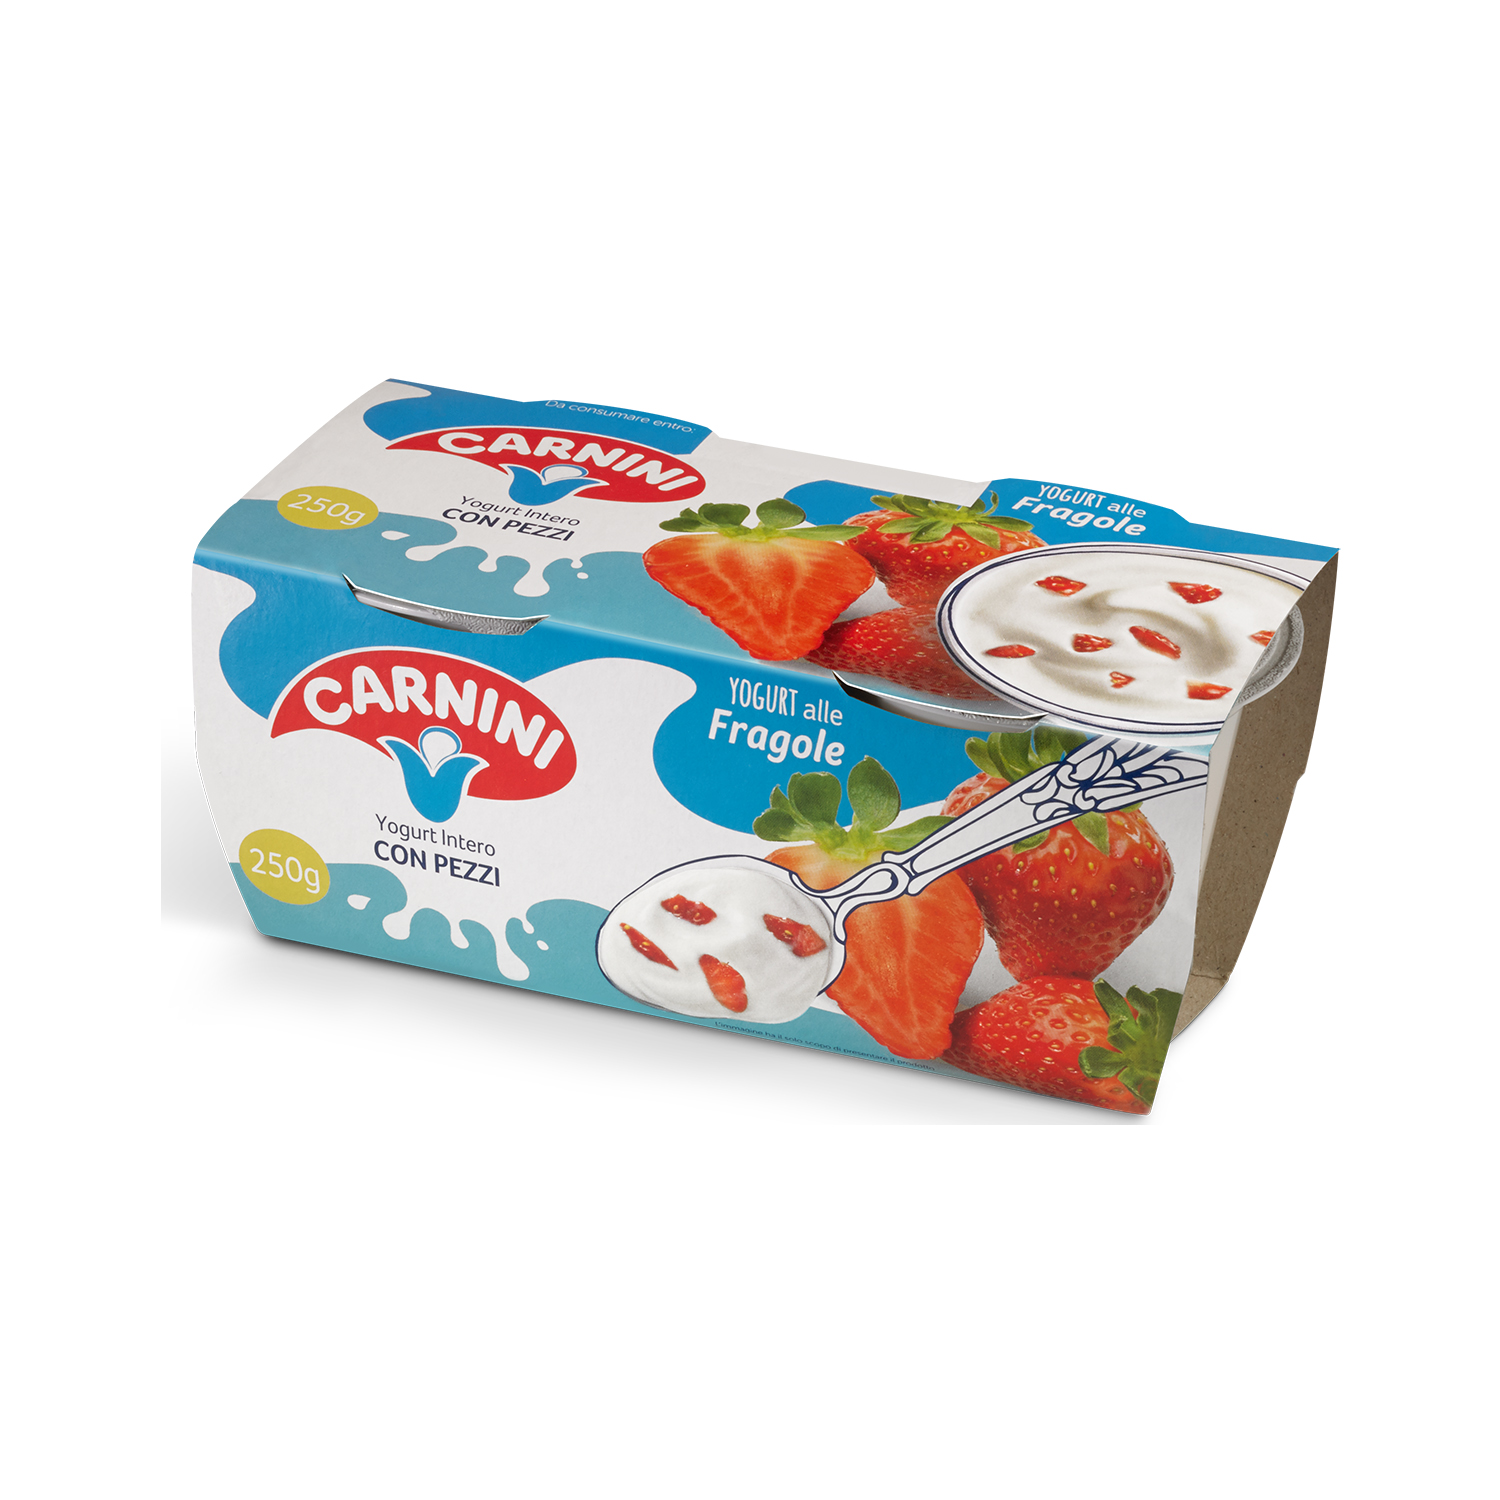 Yogurt Intero fragola 250gr - Carnini